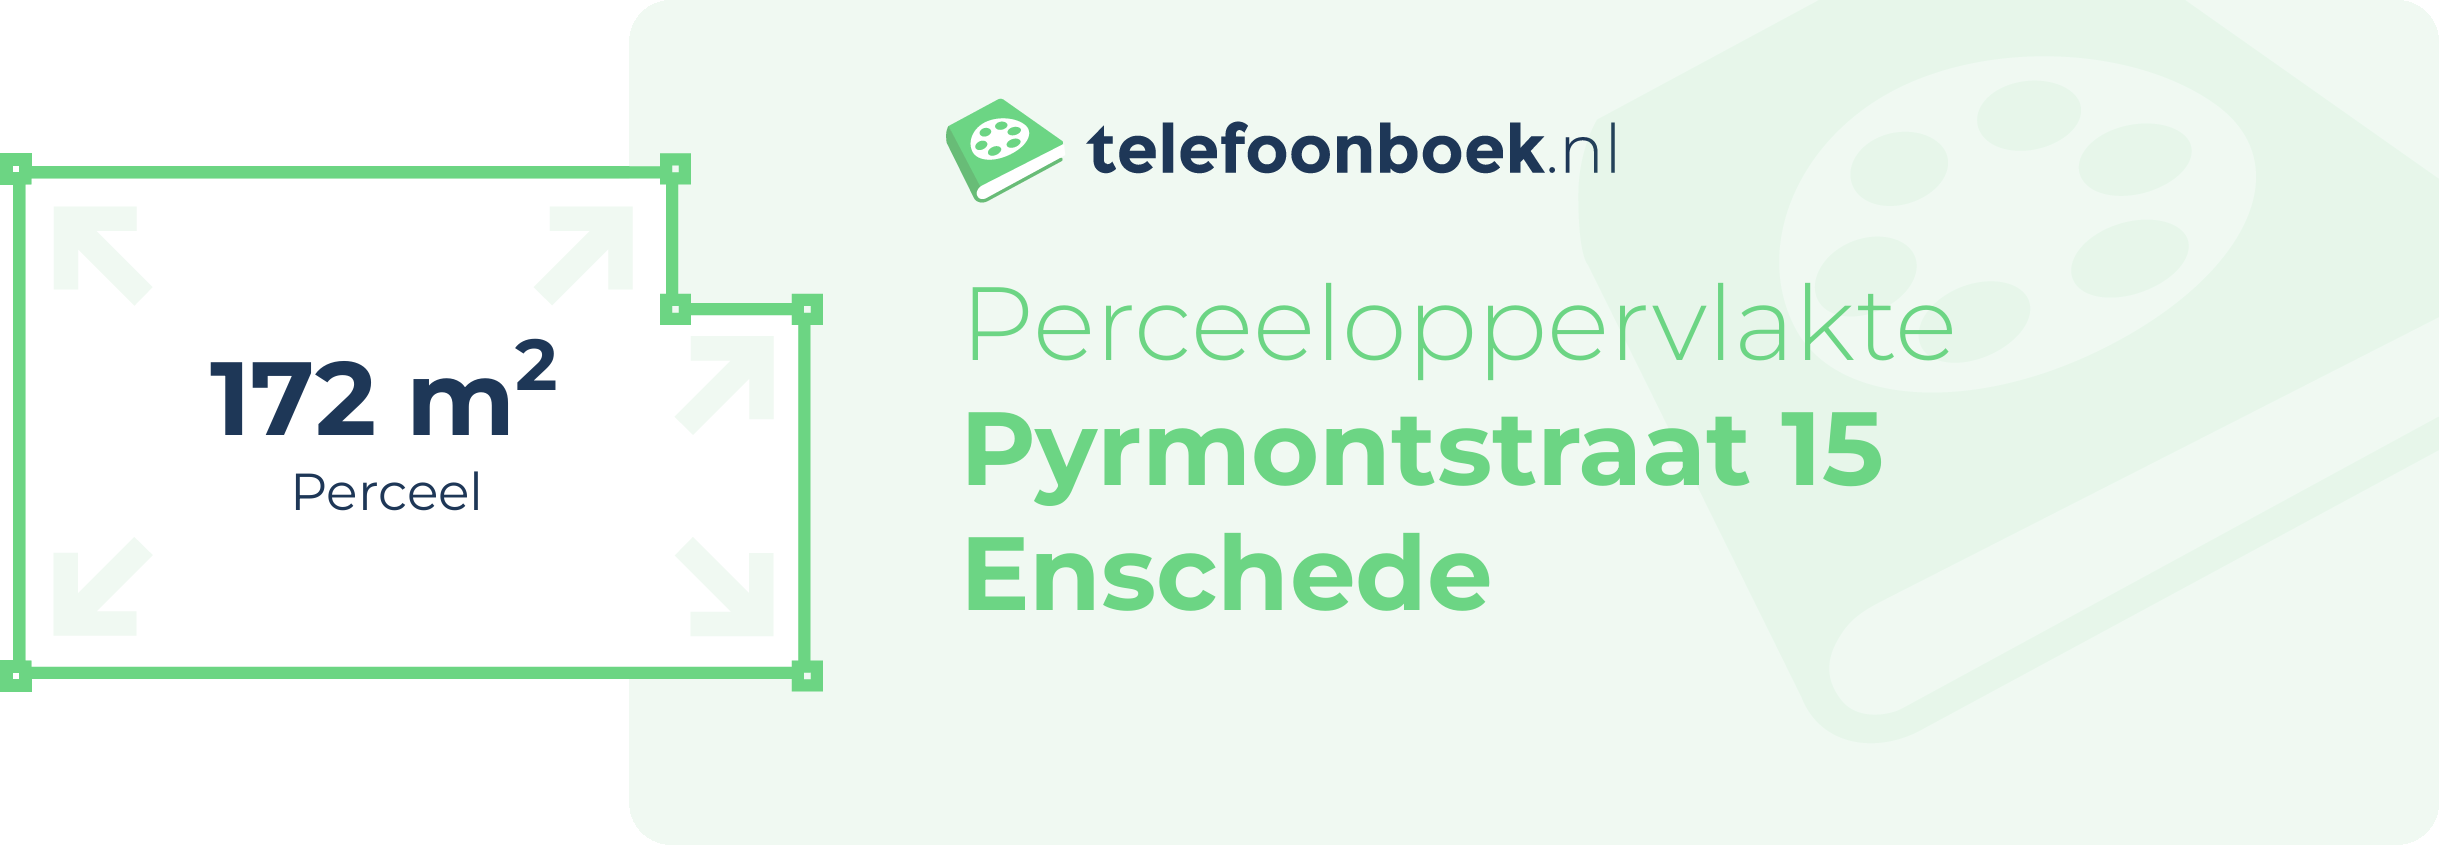 Perceeloppervlakte Pyrmontstraat 15 Enschede